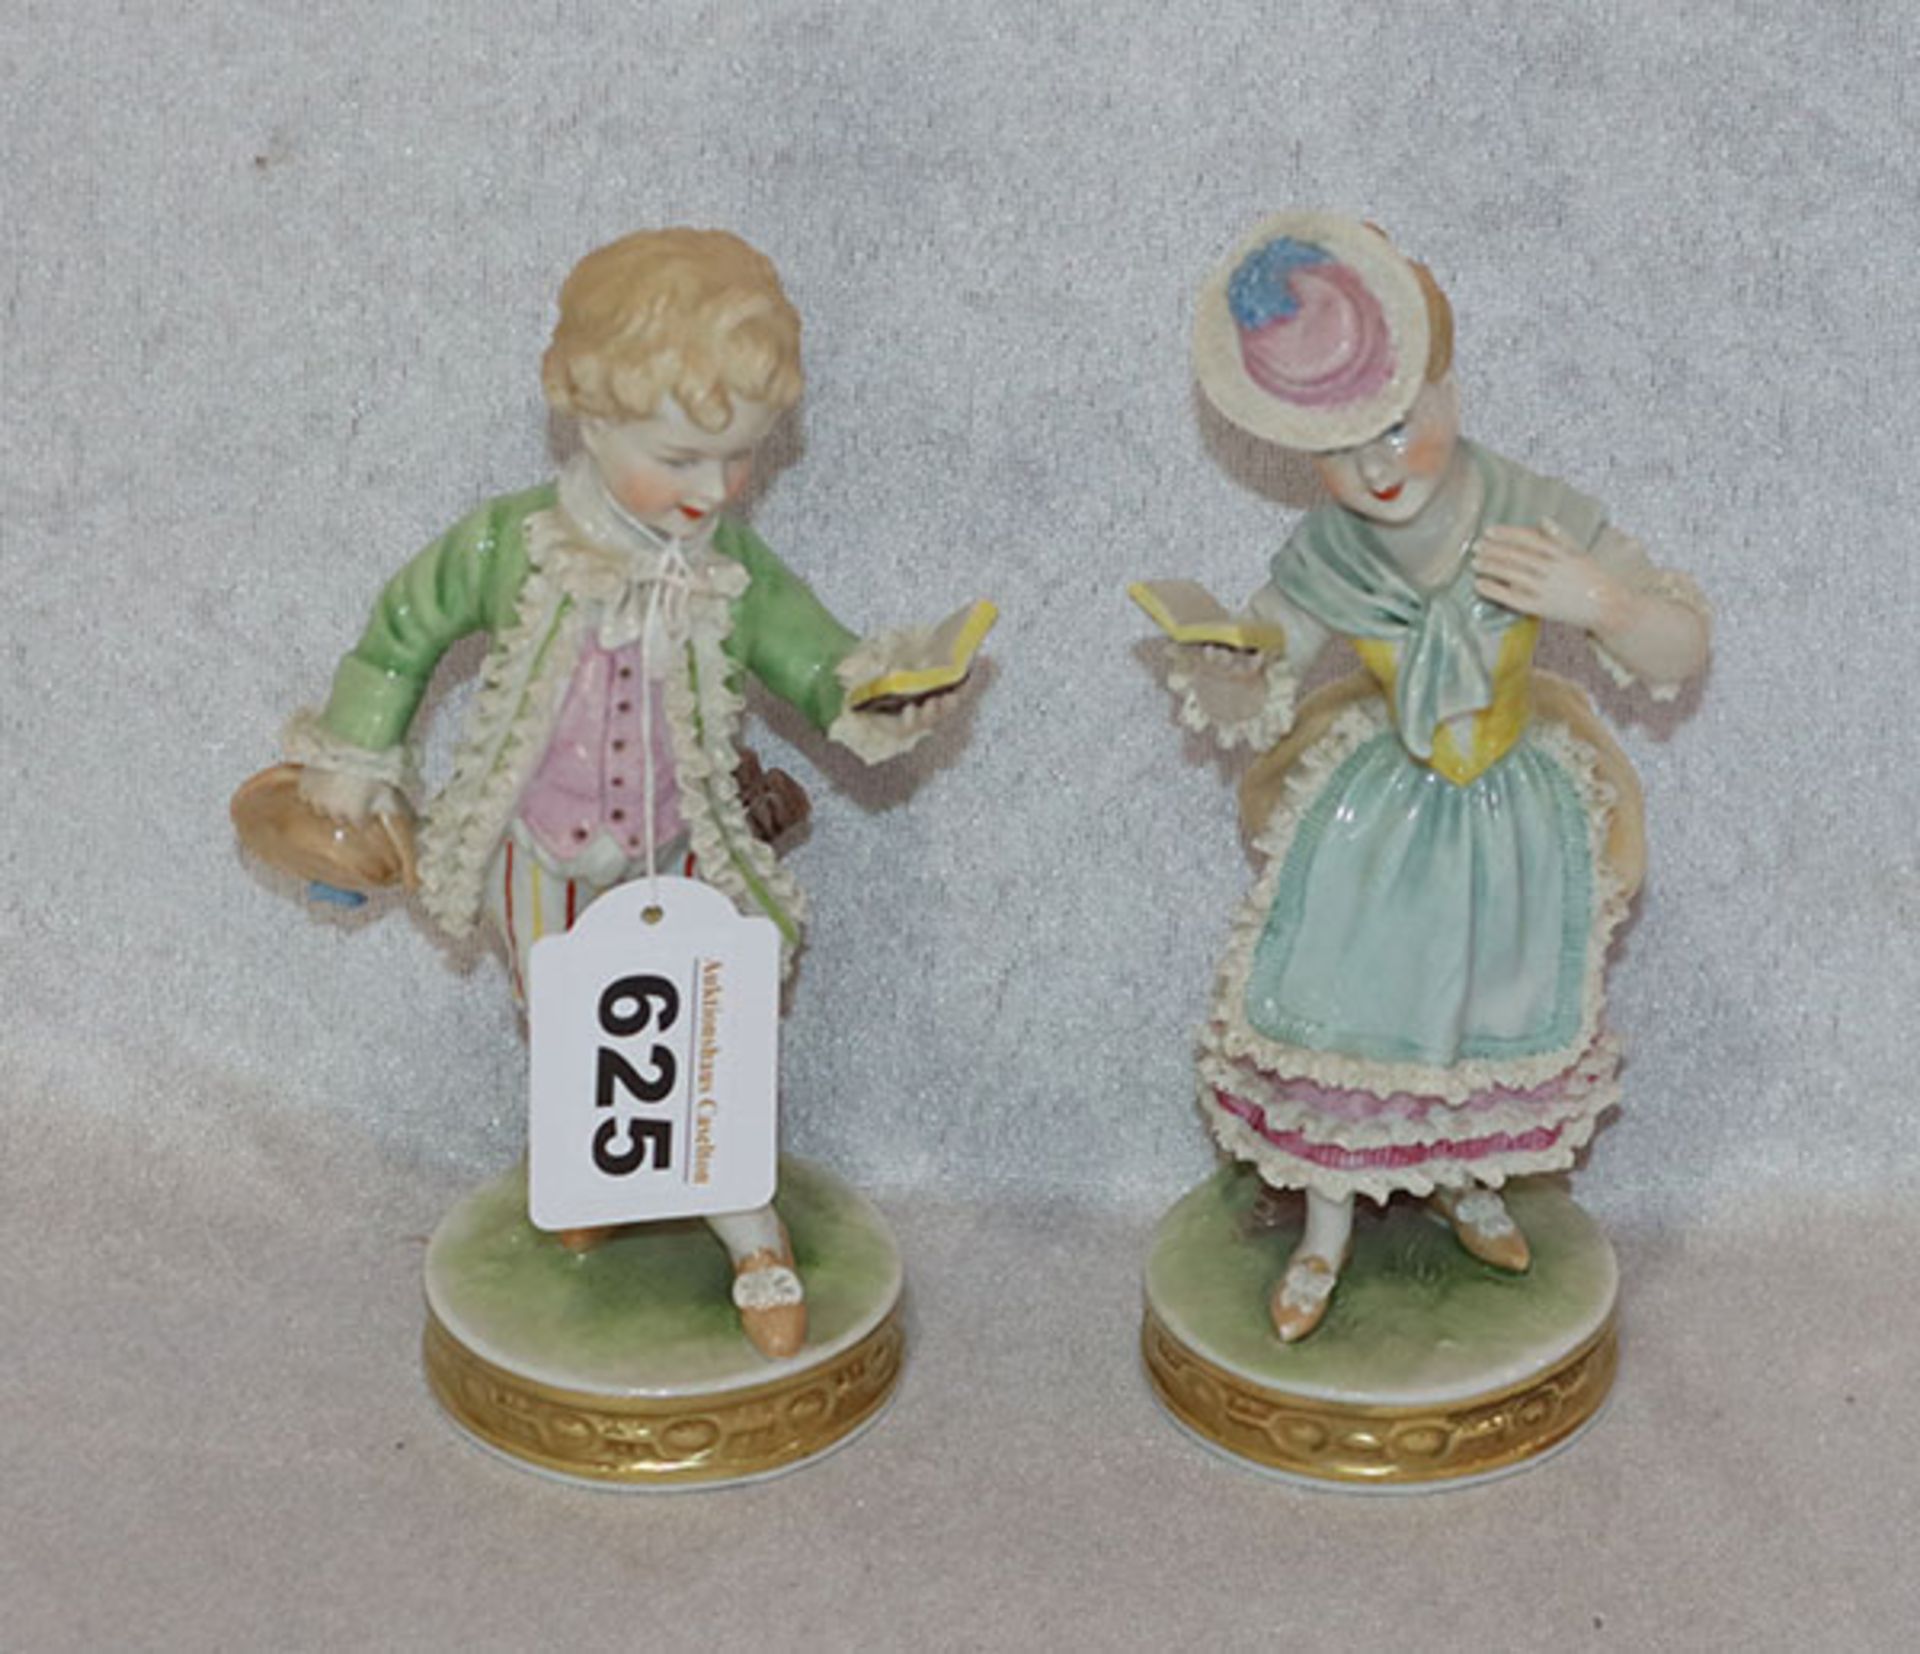 Paar Unterweissbach Porzellanfiguren ' Paar mit Buch', farbig glasiert, teils mit Spitze verziert, H